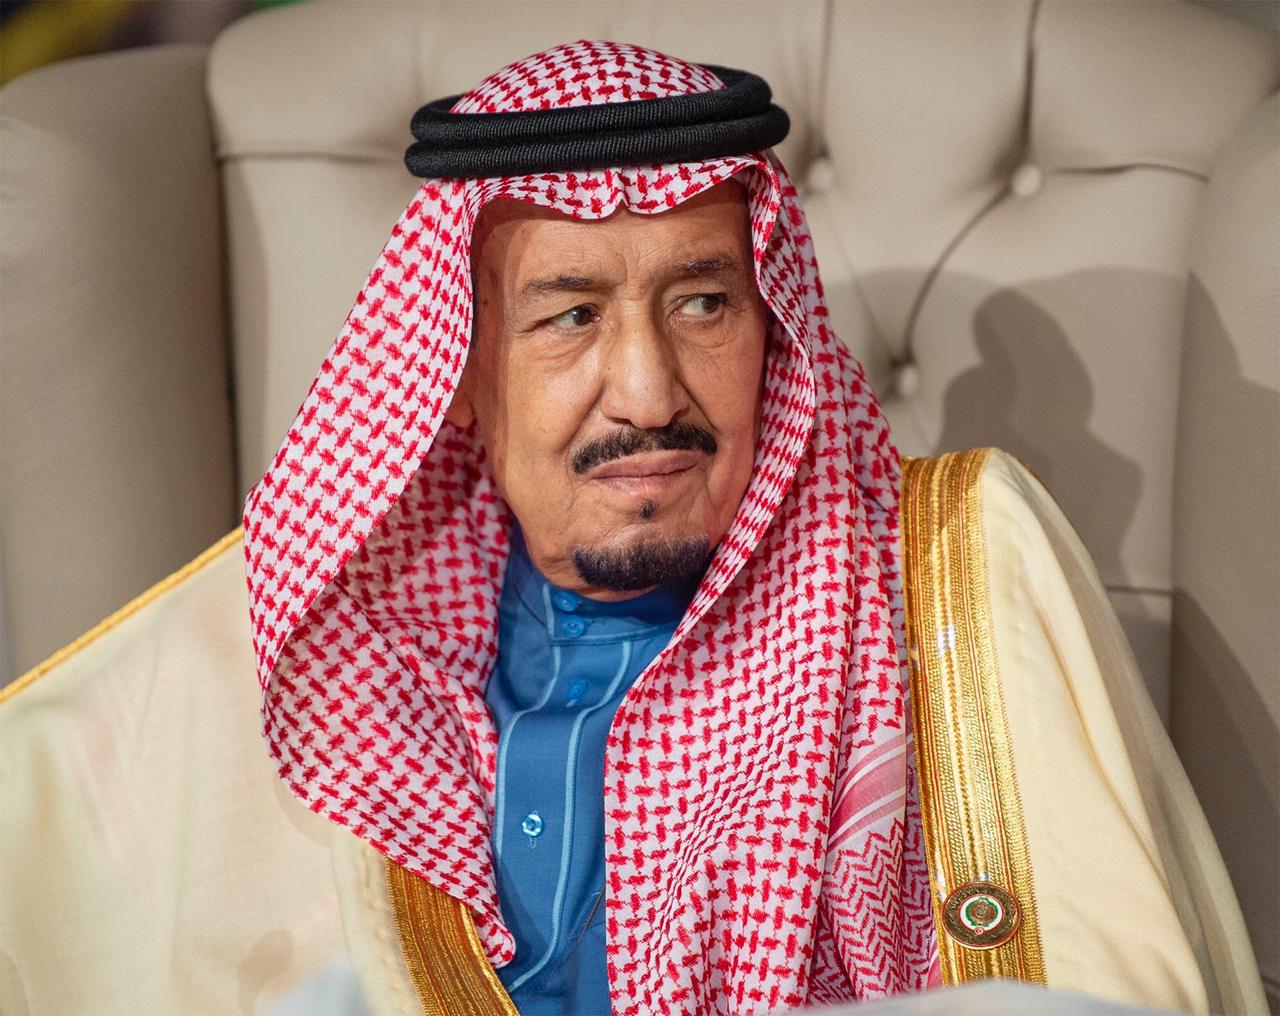 الملك سلمان بن عبدالعزيز قائد استثنائي .. قاد تنمية الوطن وأرسى العدل